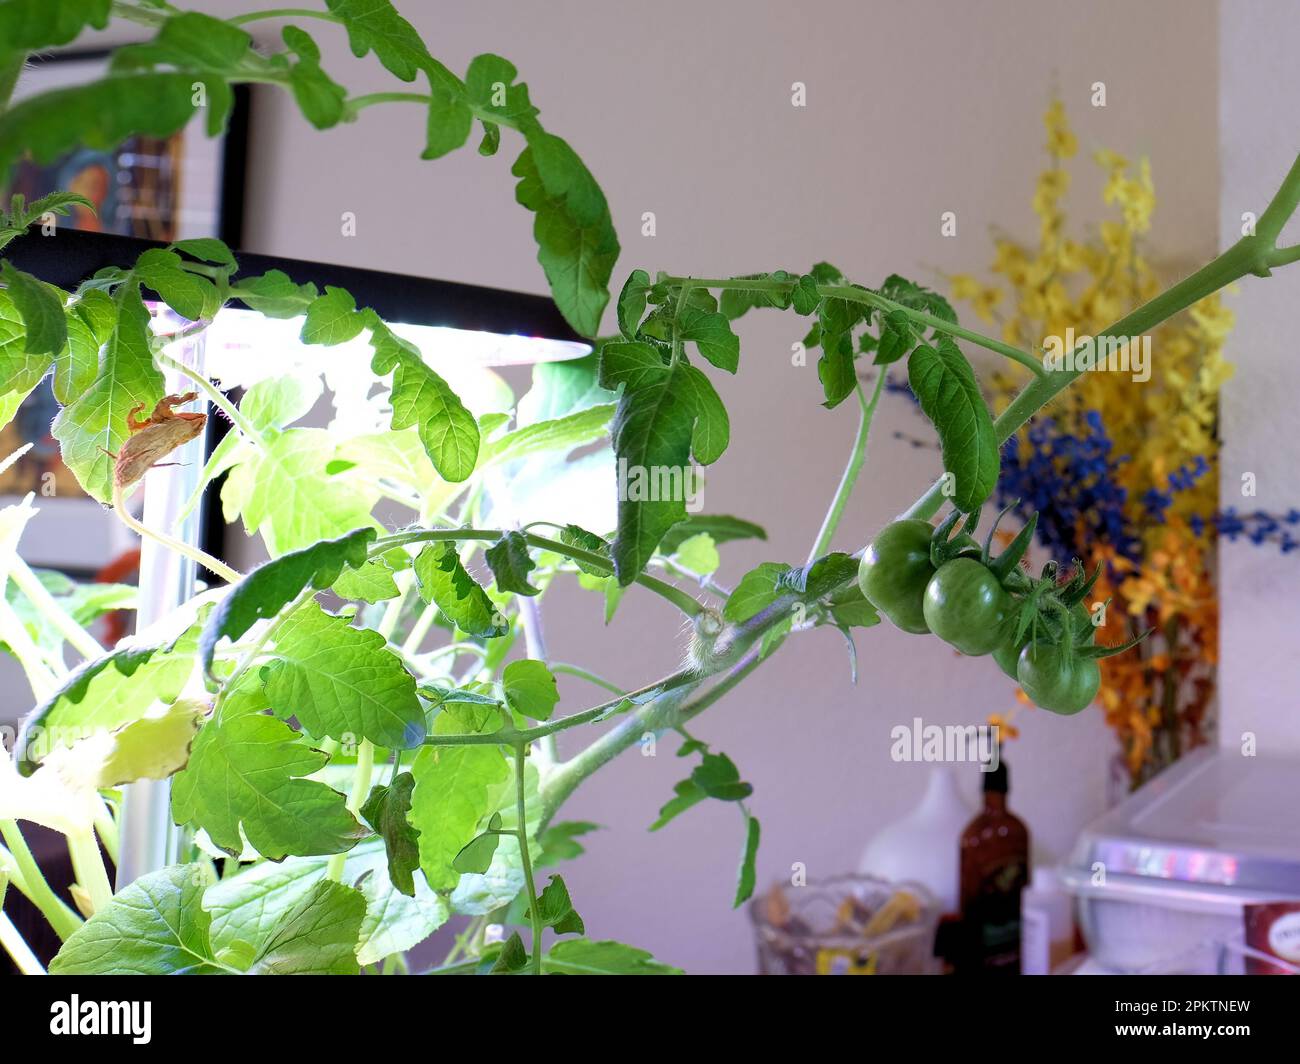 Coltivazione di pomodori all'interno in un giardino interno hydroponic casa coltivazione di verdure hydroponics; vegetazione interna e piante; ciliegia e pomodoro d'uva. Foto Stock